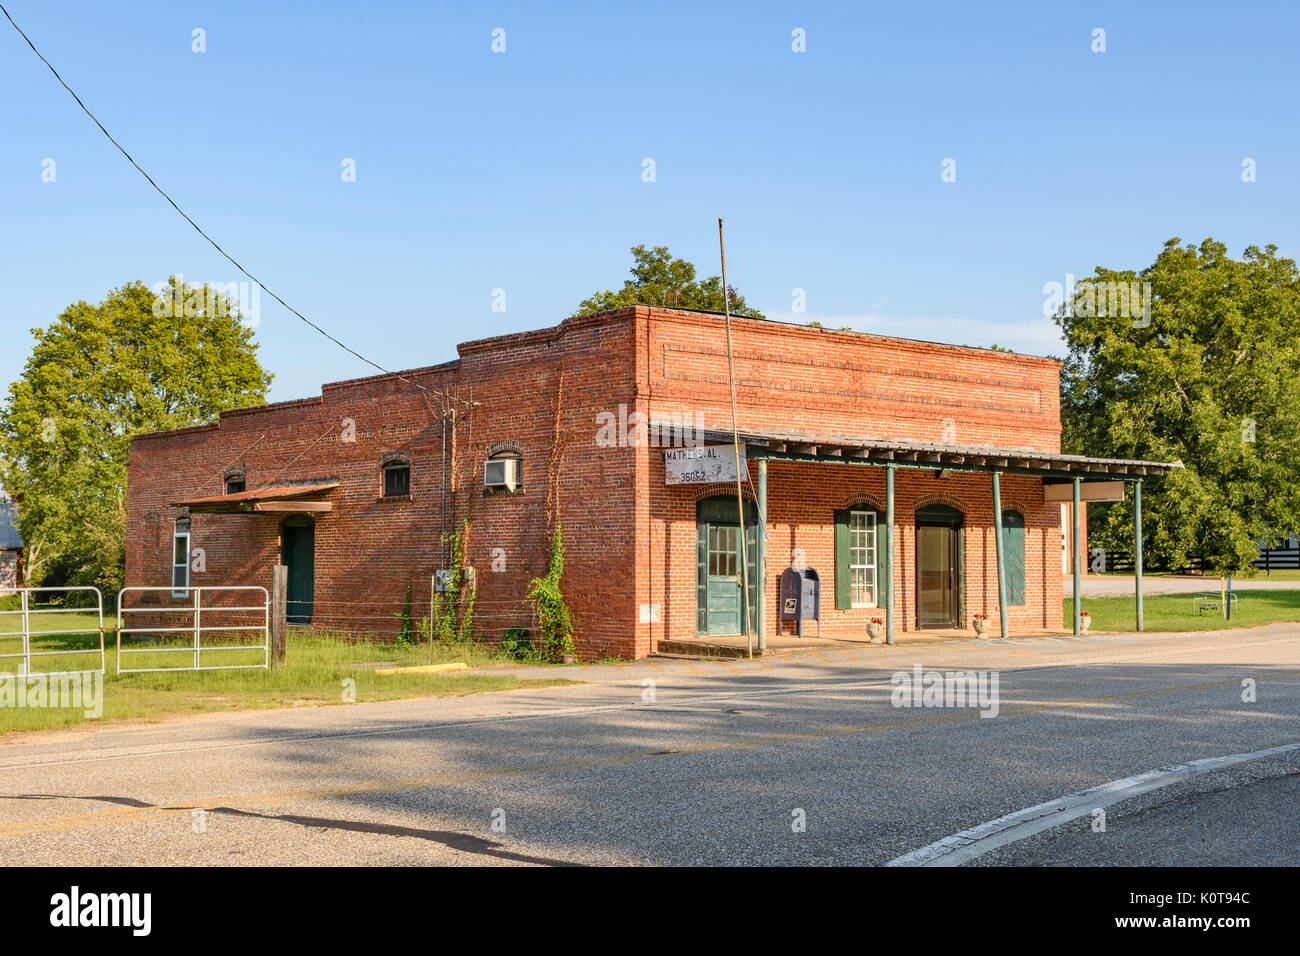 Die kleinen ländlichen Postgebäude in Matthews, Alabama, USA, die typisch für eine kleine Stadt oder Gemeinde im ländlichen Süden der USA ist. Stockfoto